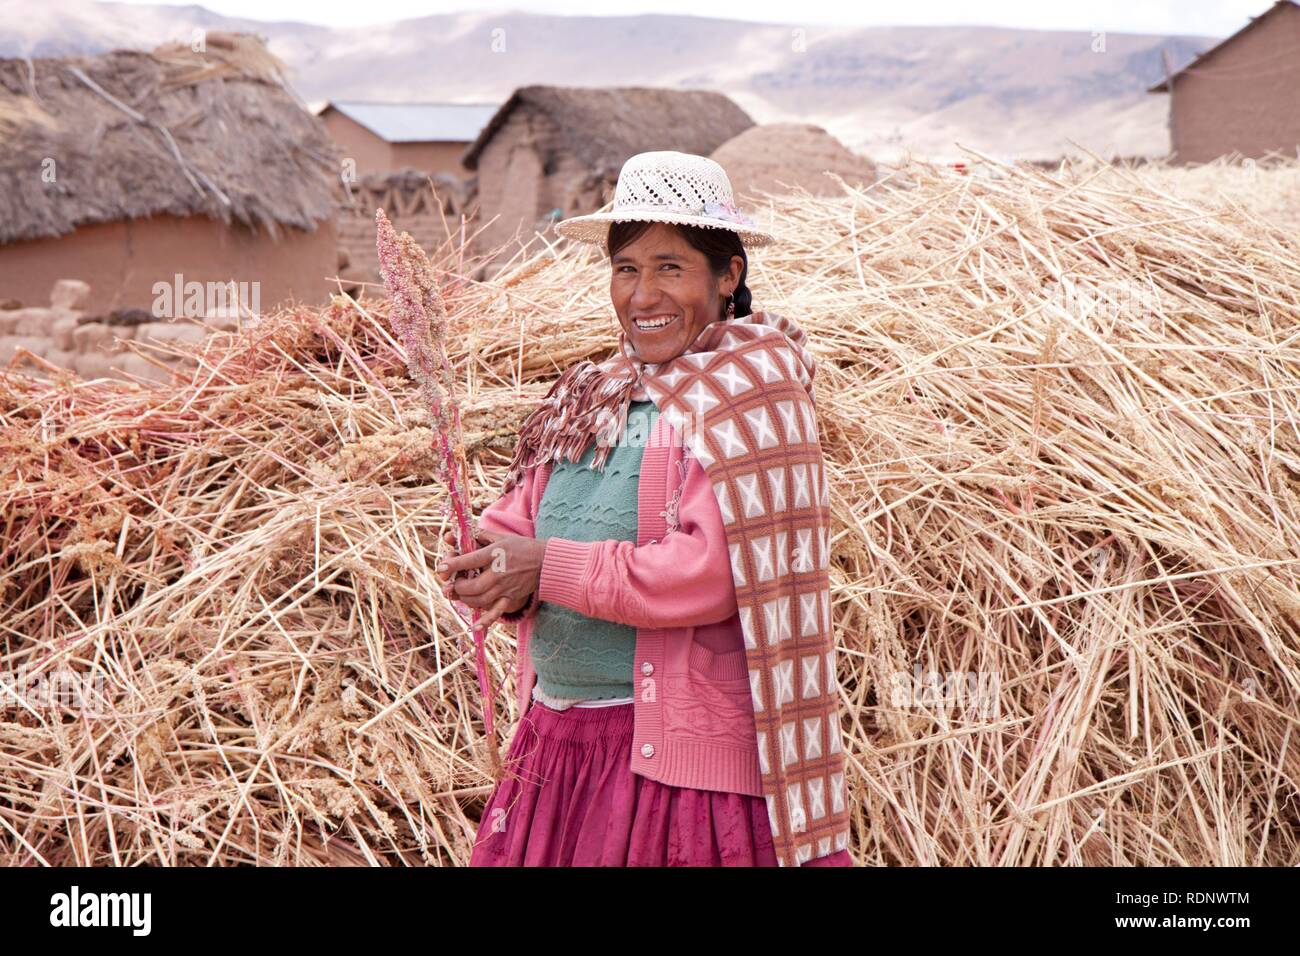 Traditionell gekleidete Frau auf einem Bauernhof im Juli, Puno, Peru, Südamerika Stockfoto